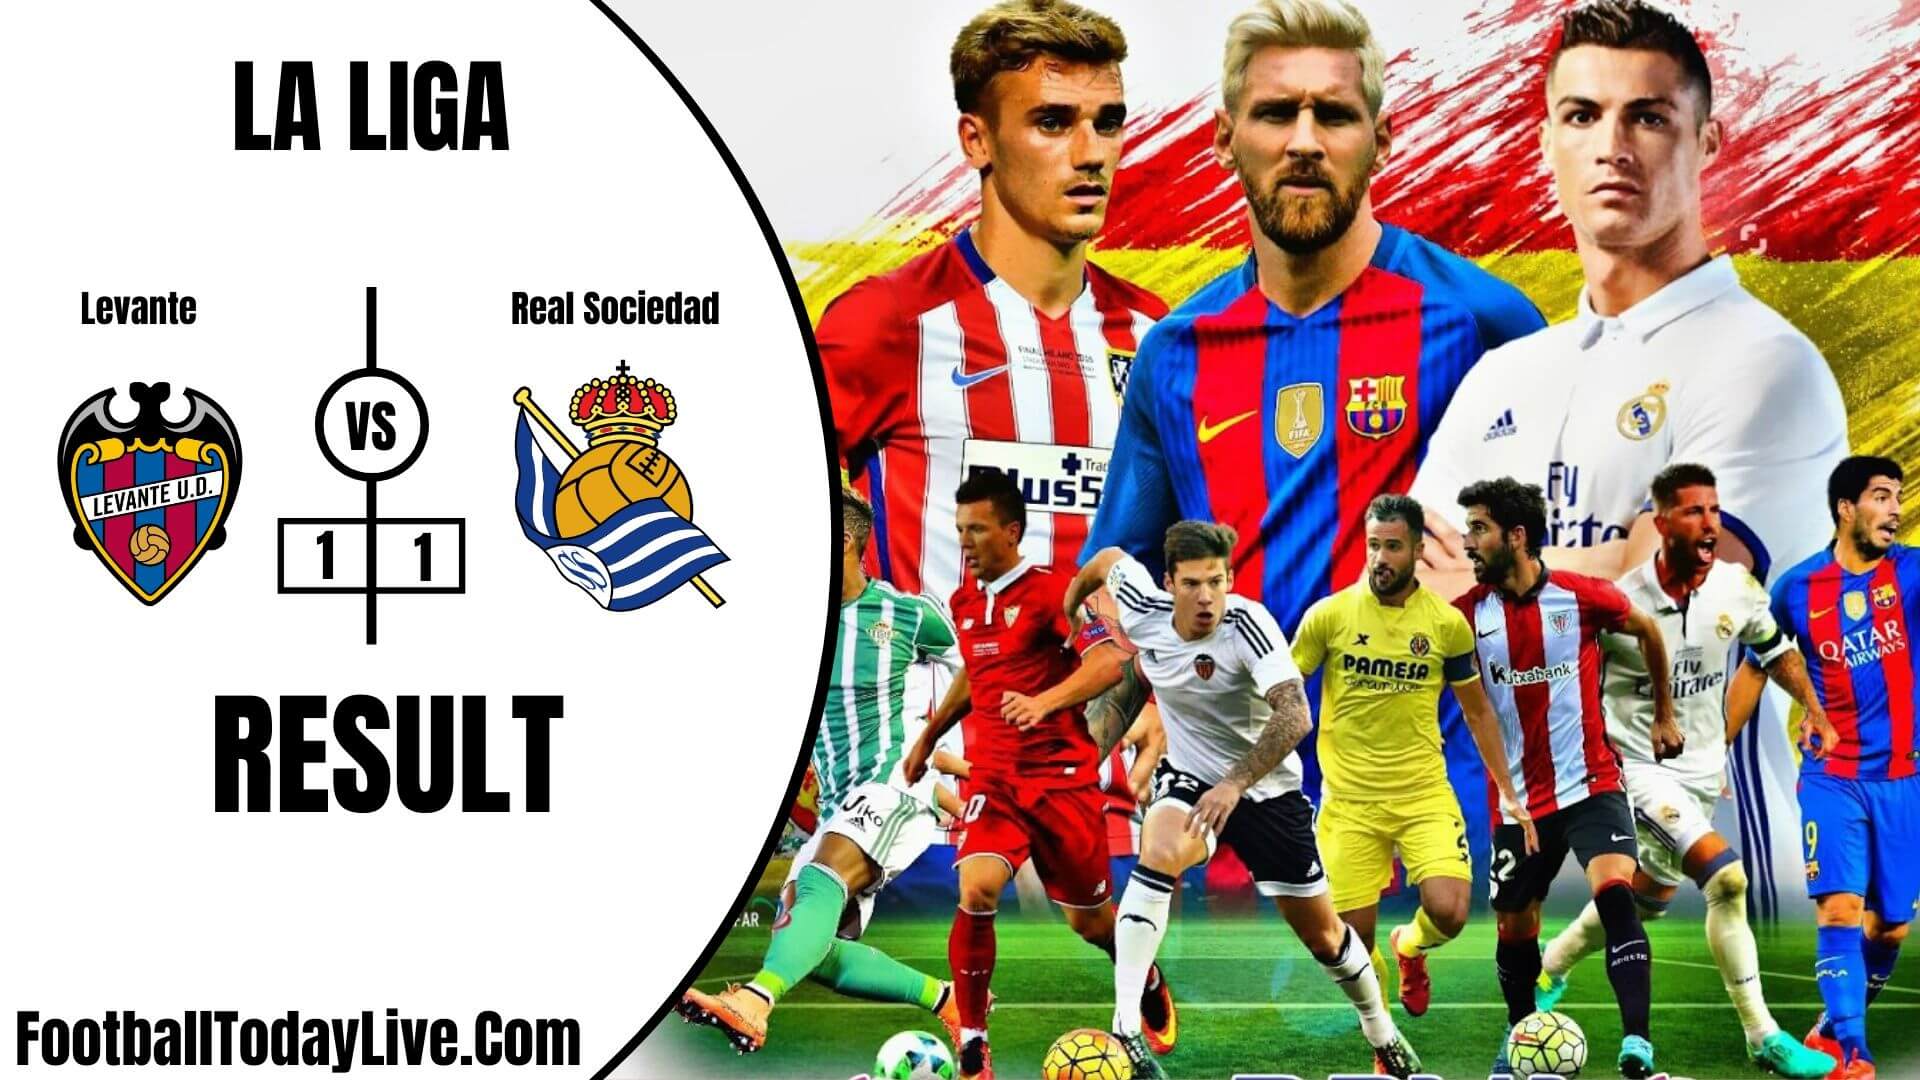 Levante Vs Real Sociedad | La Liga Week 34 Result 2020